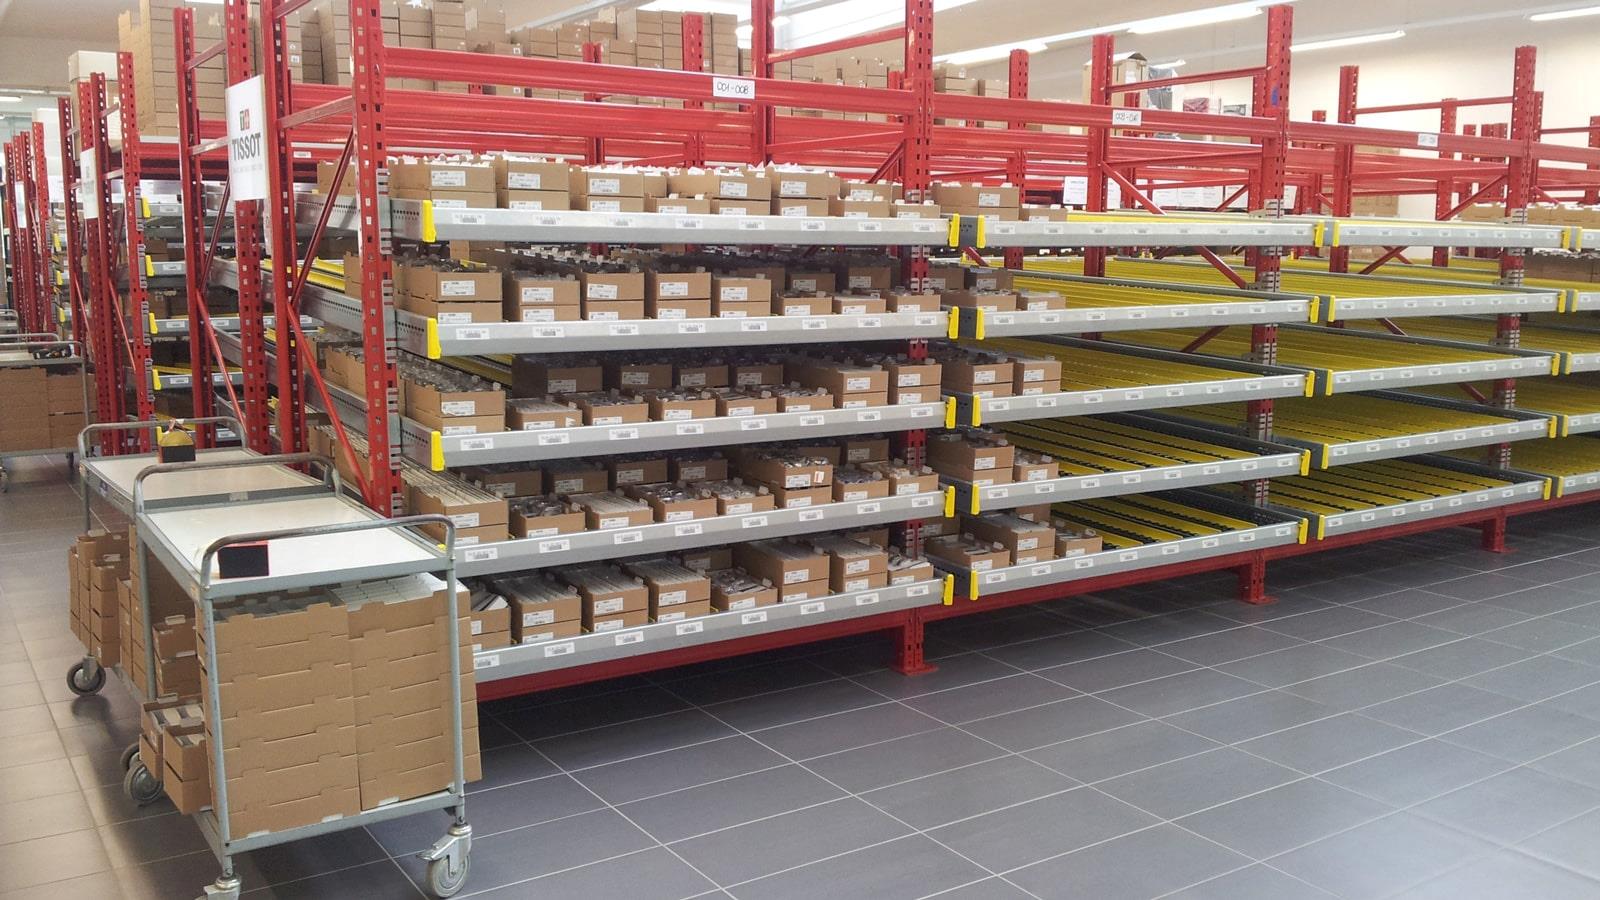 Pièces détachées stockées sur des étagères chez Tissot